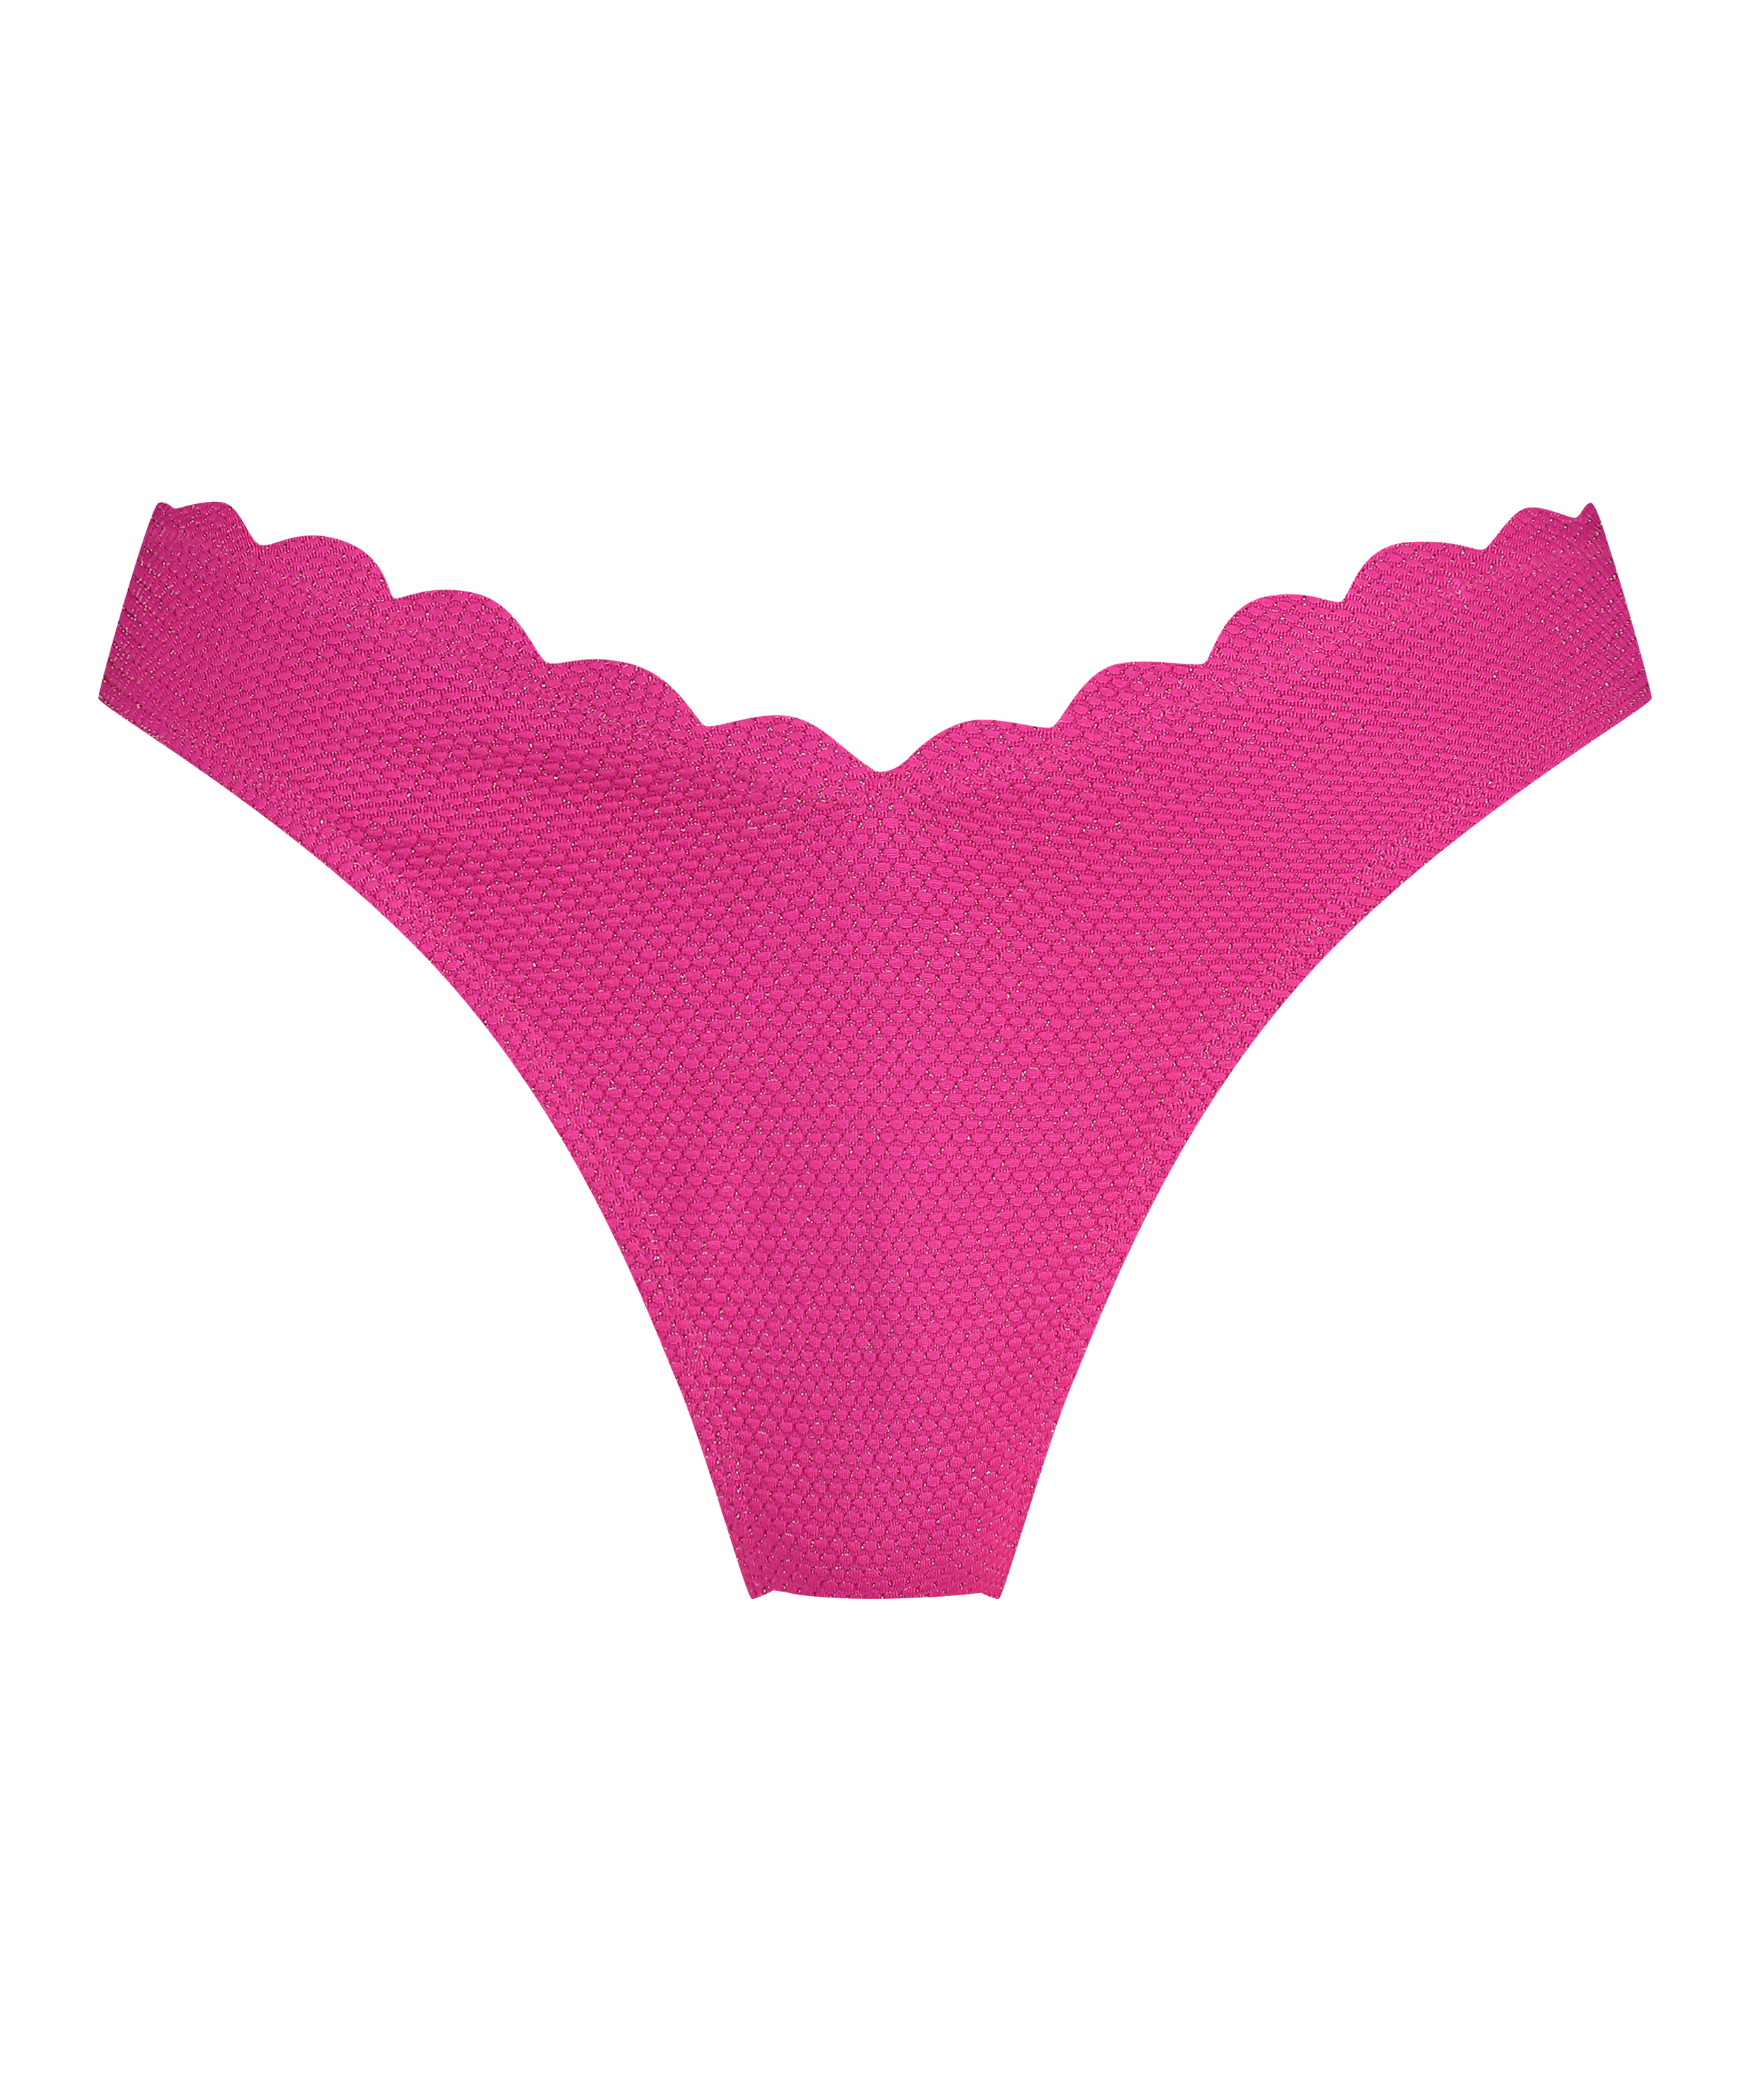 Scallop Lurex High-Leg Bikini Bottoms, Pink, main